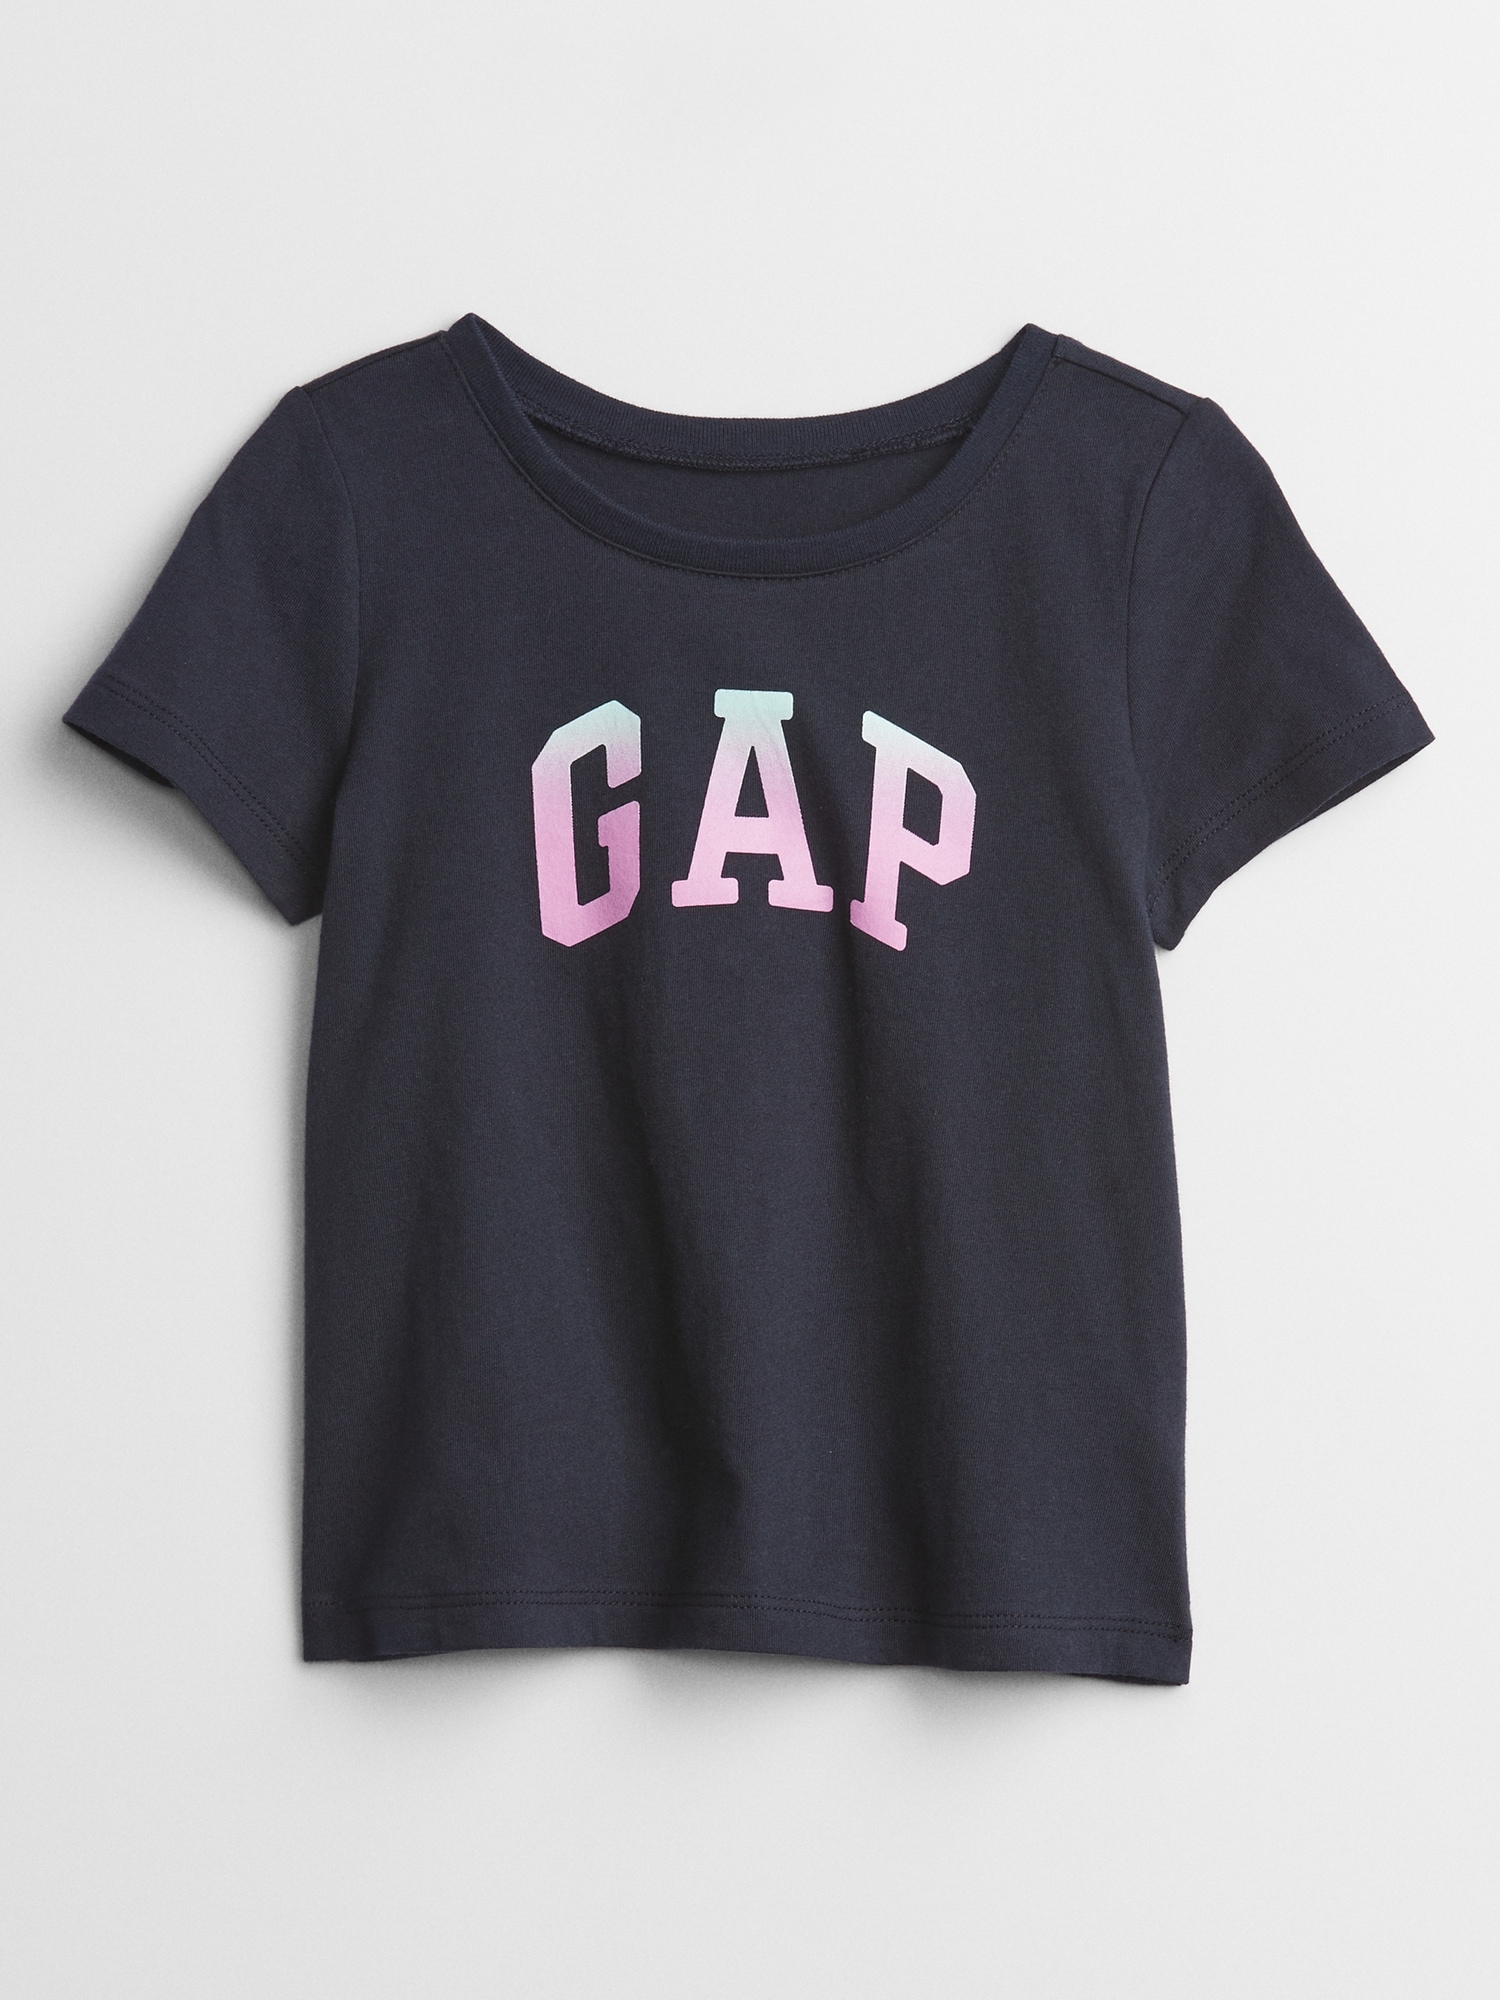 babyGap Gap Logo T-Shirt